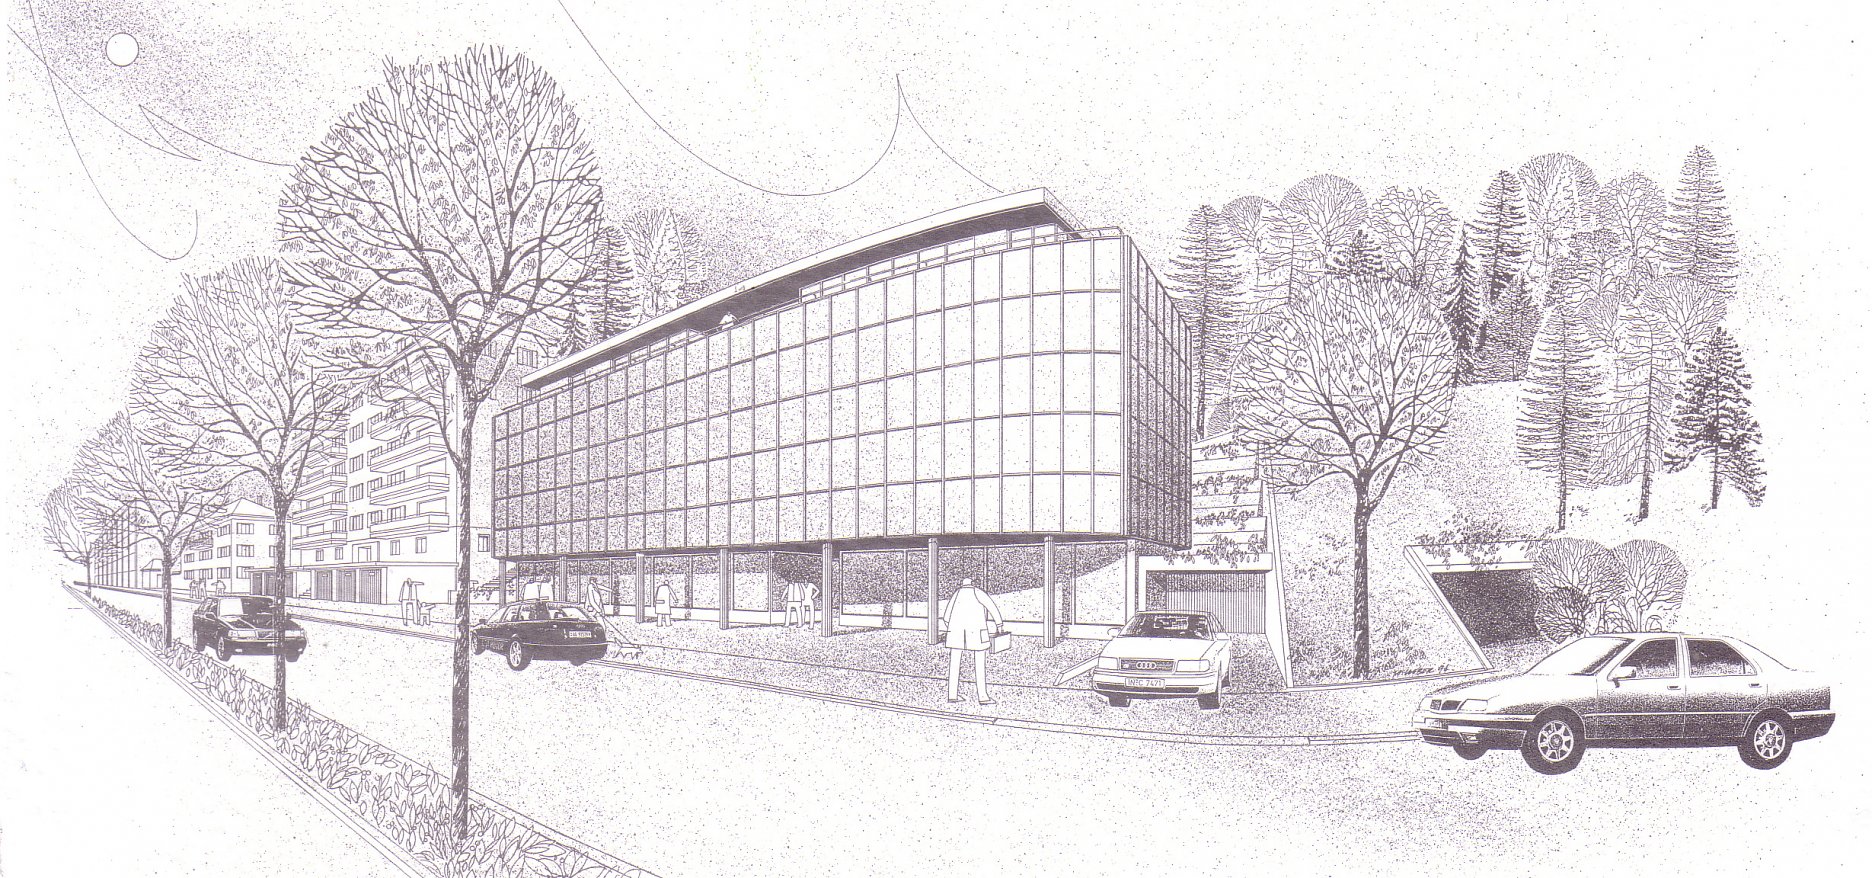 Administratívna budova Shaffhausen (1994 -1995)